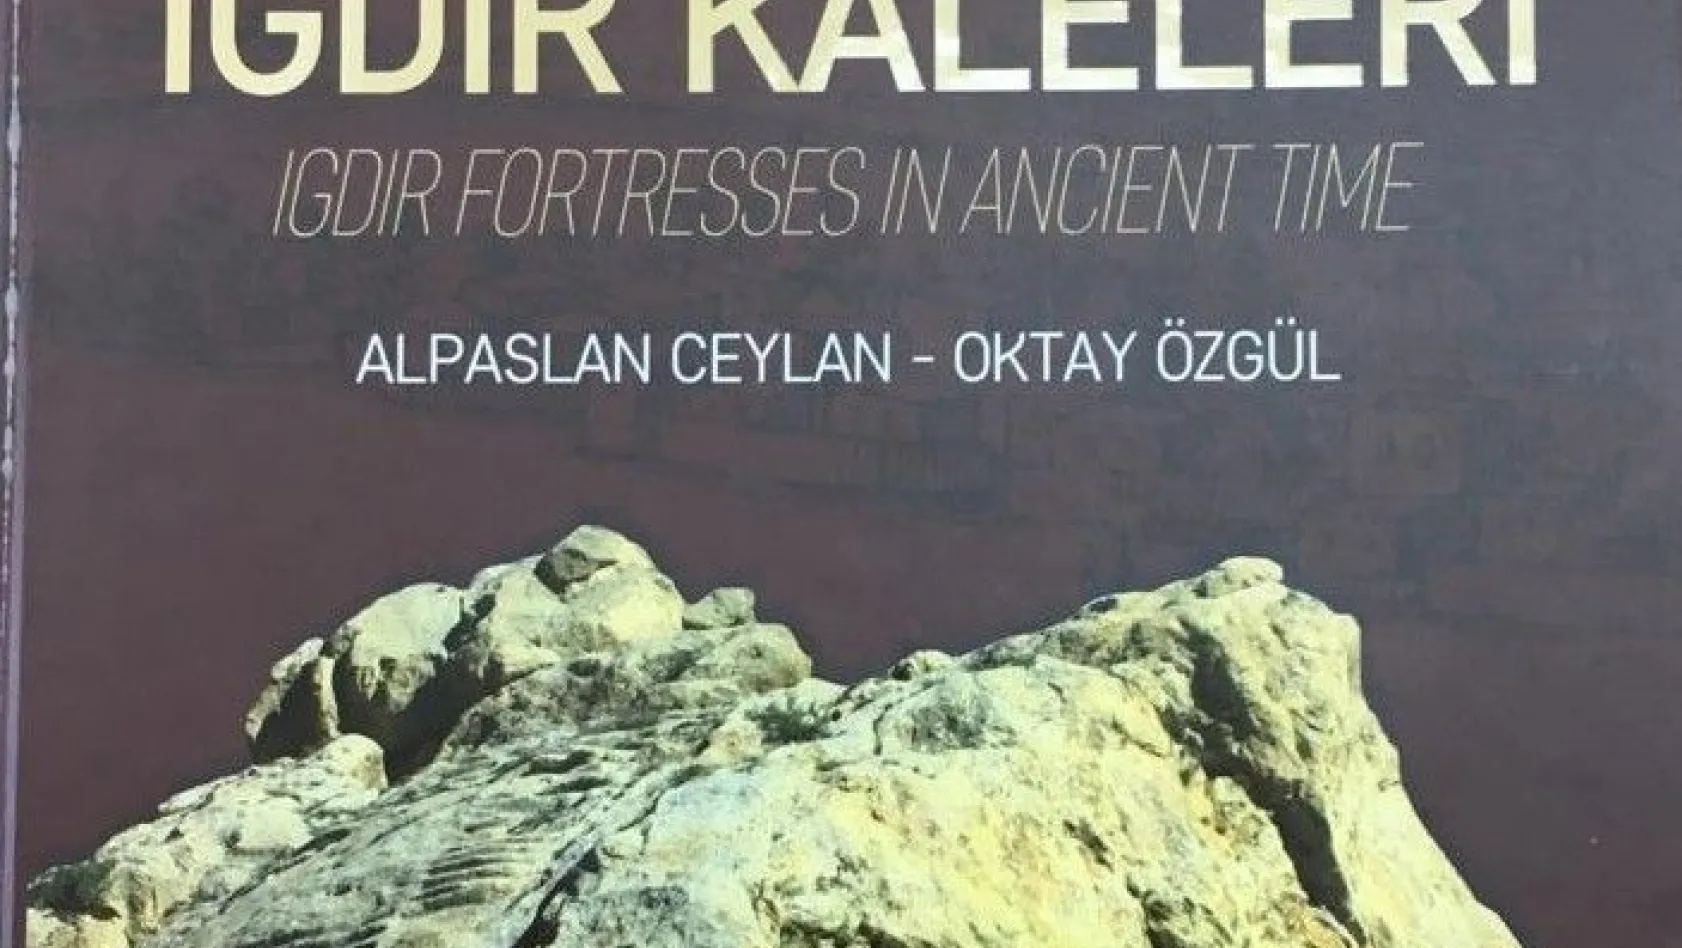 Doğu Anadolu tarihi ve arkeolojik araştırmaları devam ediyor
